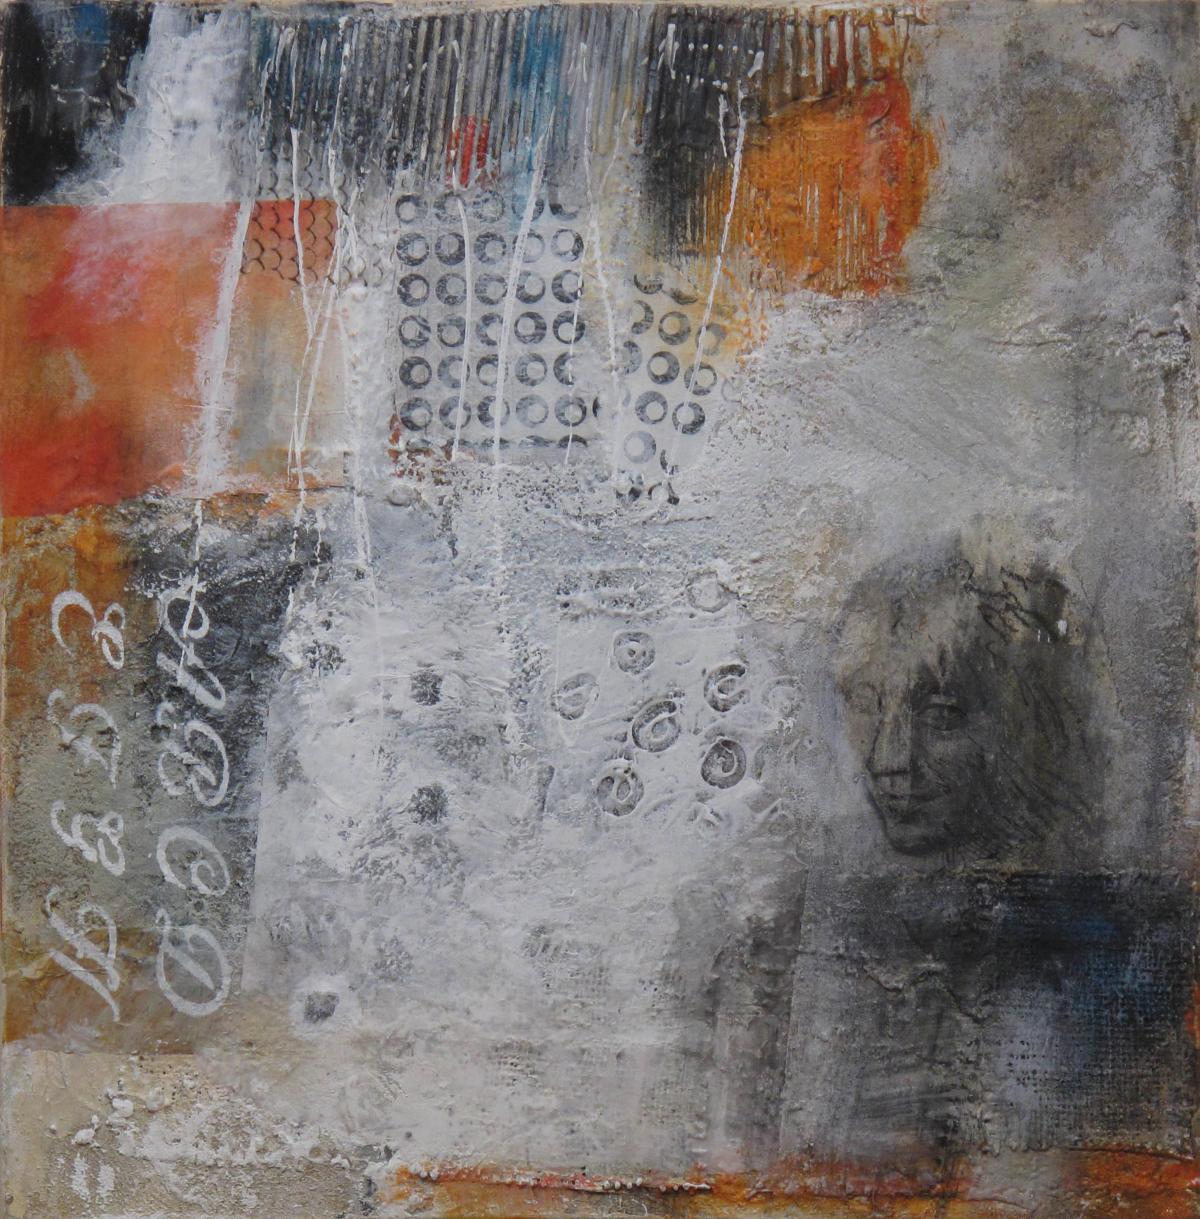 Die Geheimnisse der Wände II, 2010, Acryl und Collage auf Leinwand, 50 x 50 cm